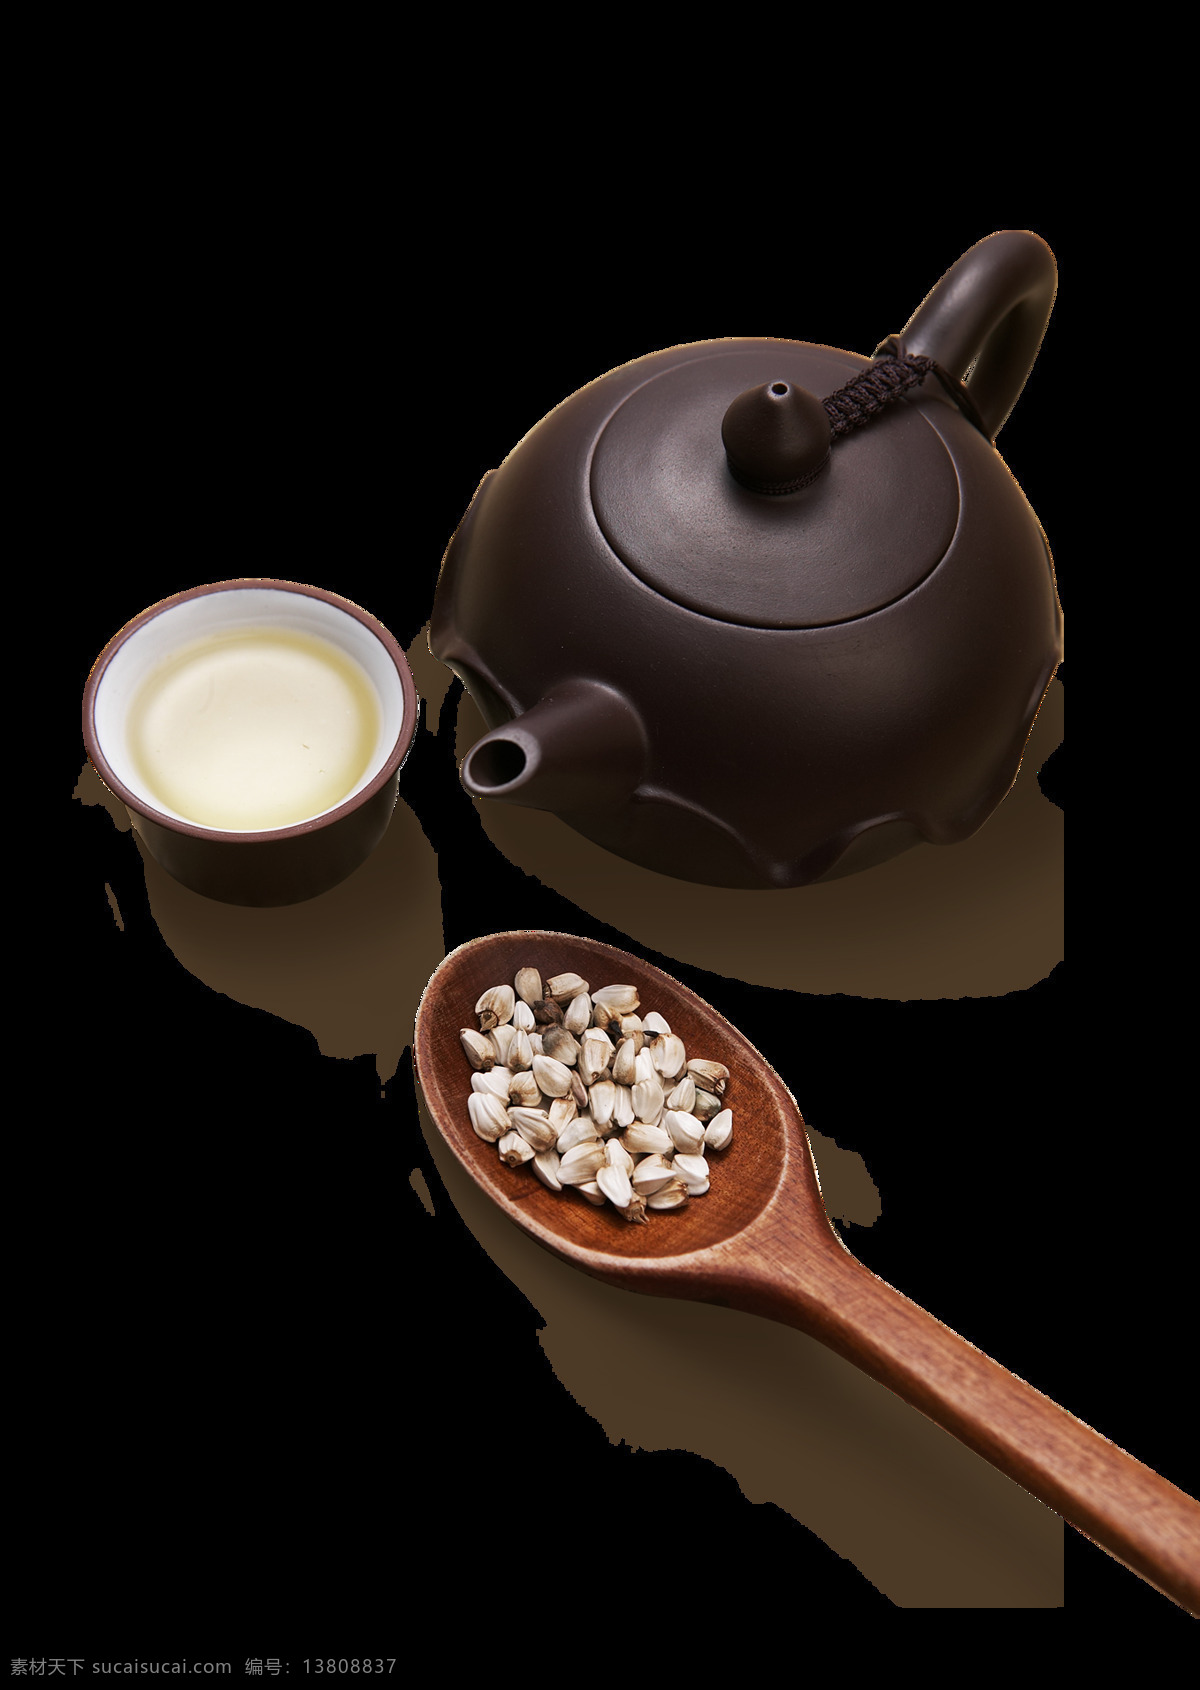 茶壶图片 茶壶 茶杯 茶 小件 茶水 茶叶 叶